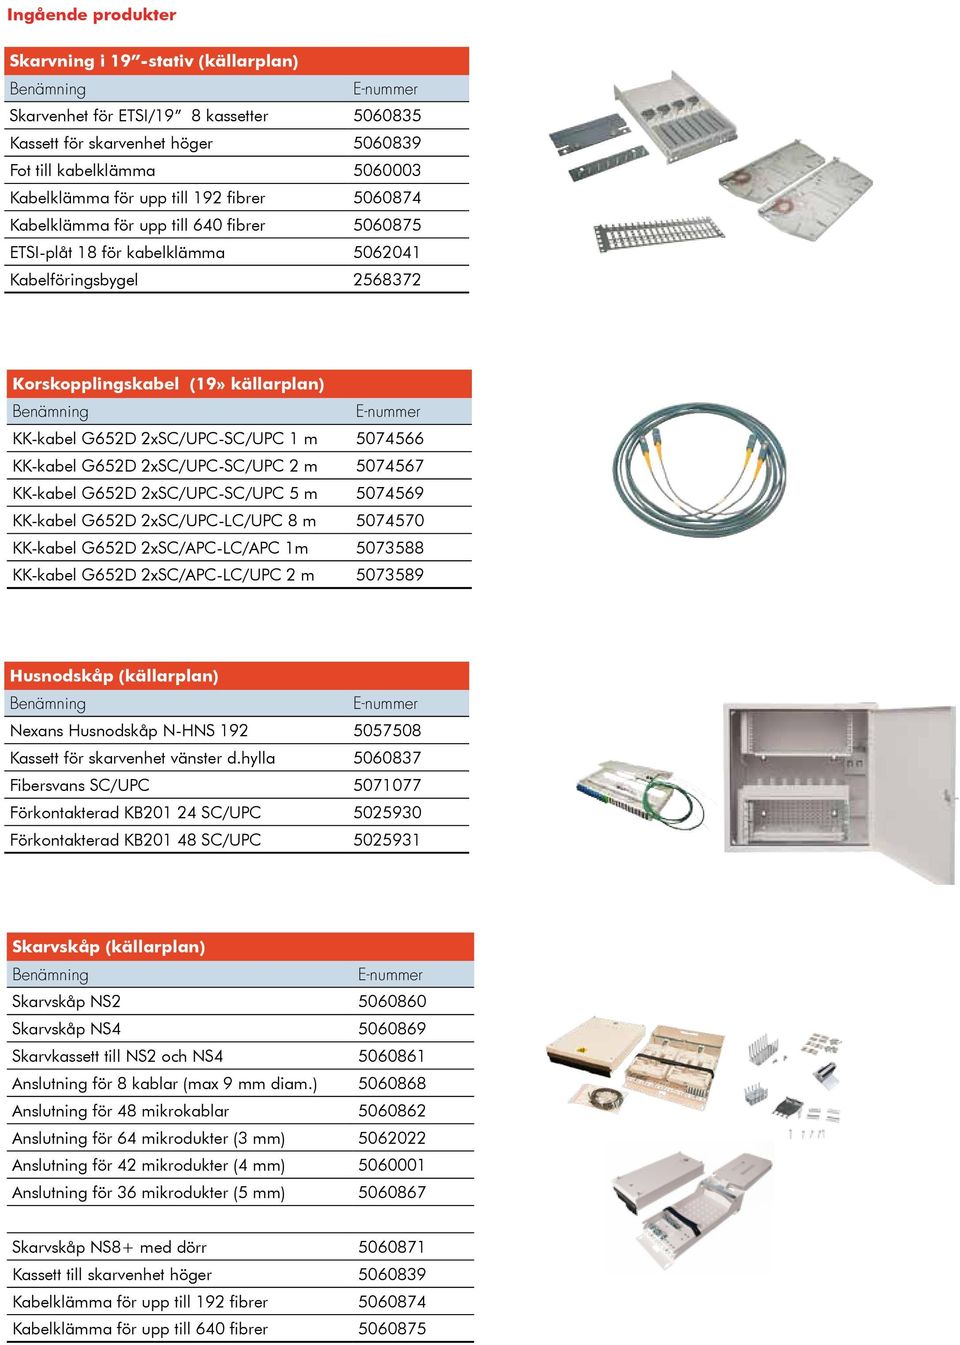 KK-kabel G652D 2xSC/UPC-SC/UPC 2 m 5074567 KK-kabel G652D 2xSC/UPC-SC/UPC 5 m 5074569 KK-kabel G652D 2xSC/UPC-LC/UPC 8 m 5074570 KK-kabel G652D 2xSC/APC-LC/APC 1m 5073588 KK-kabel G652D